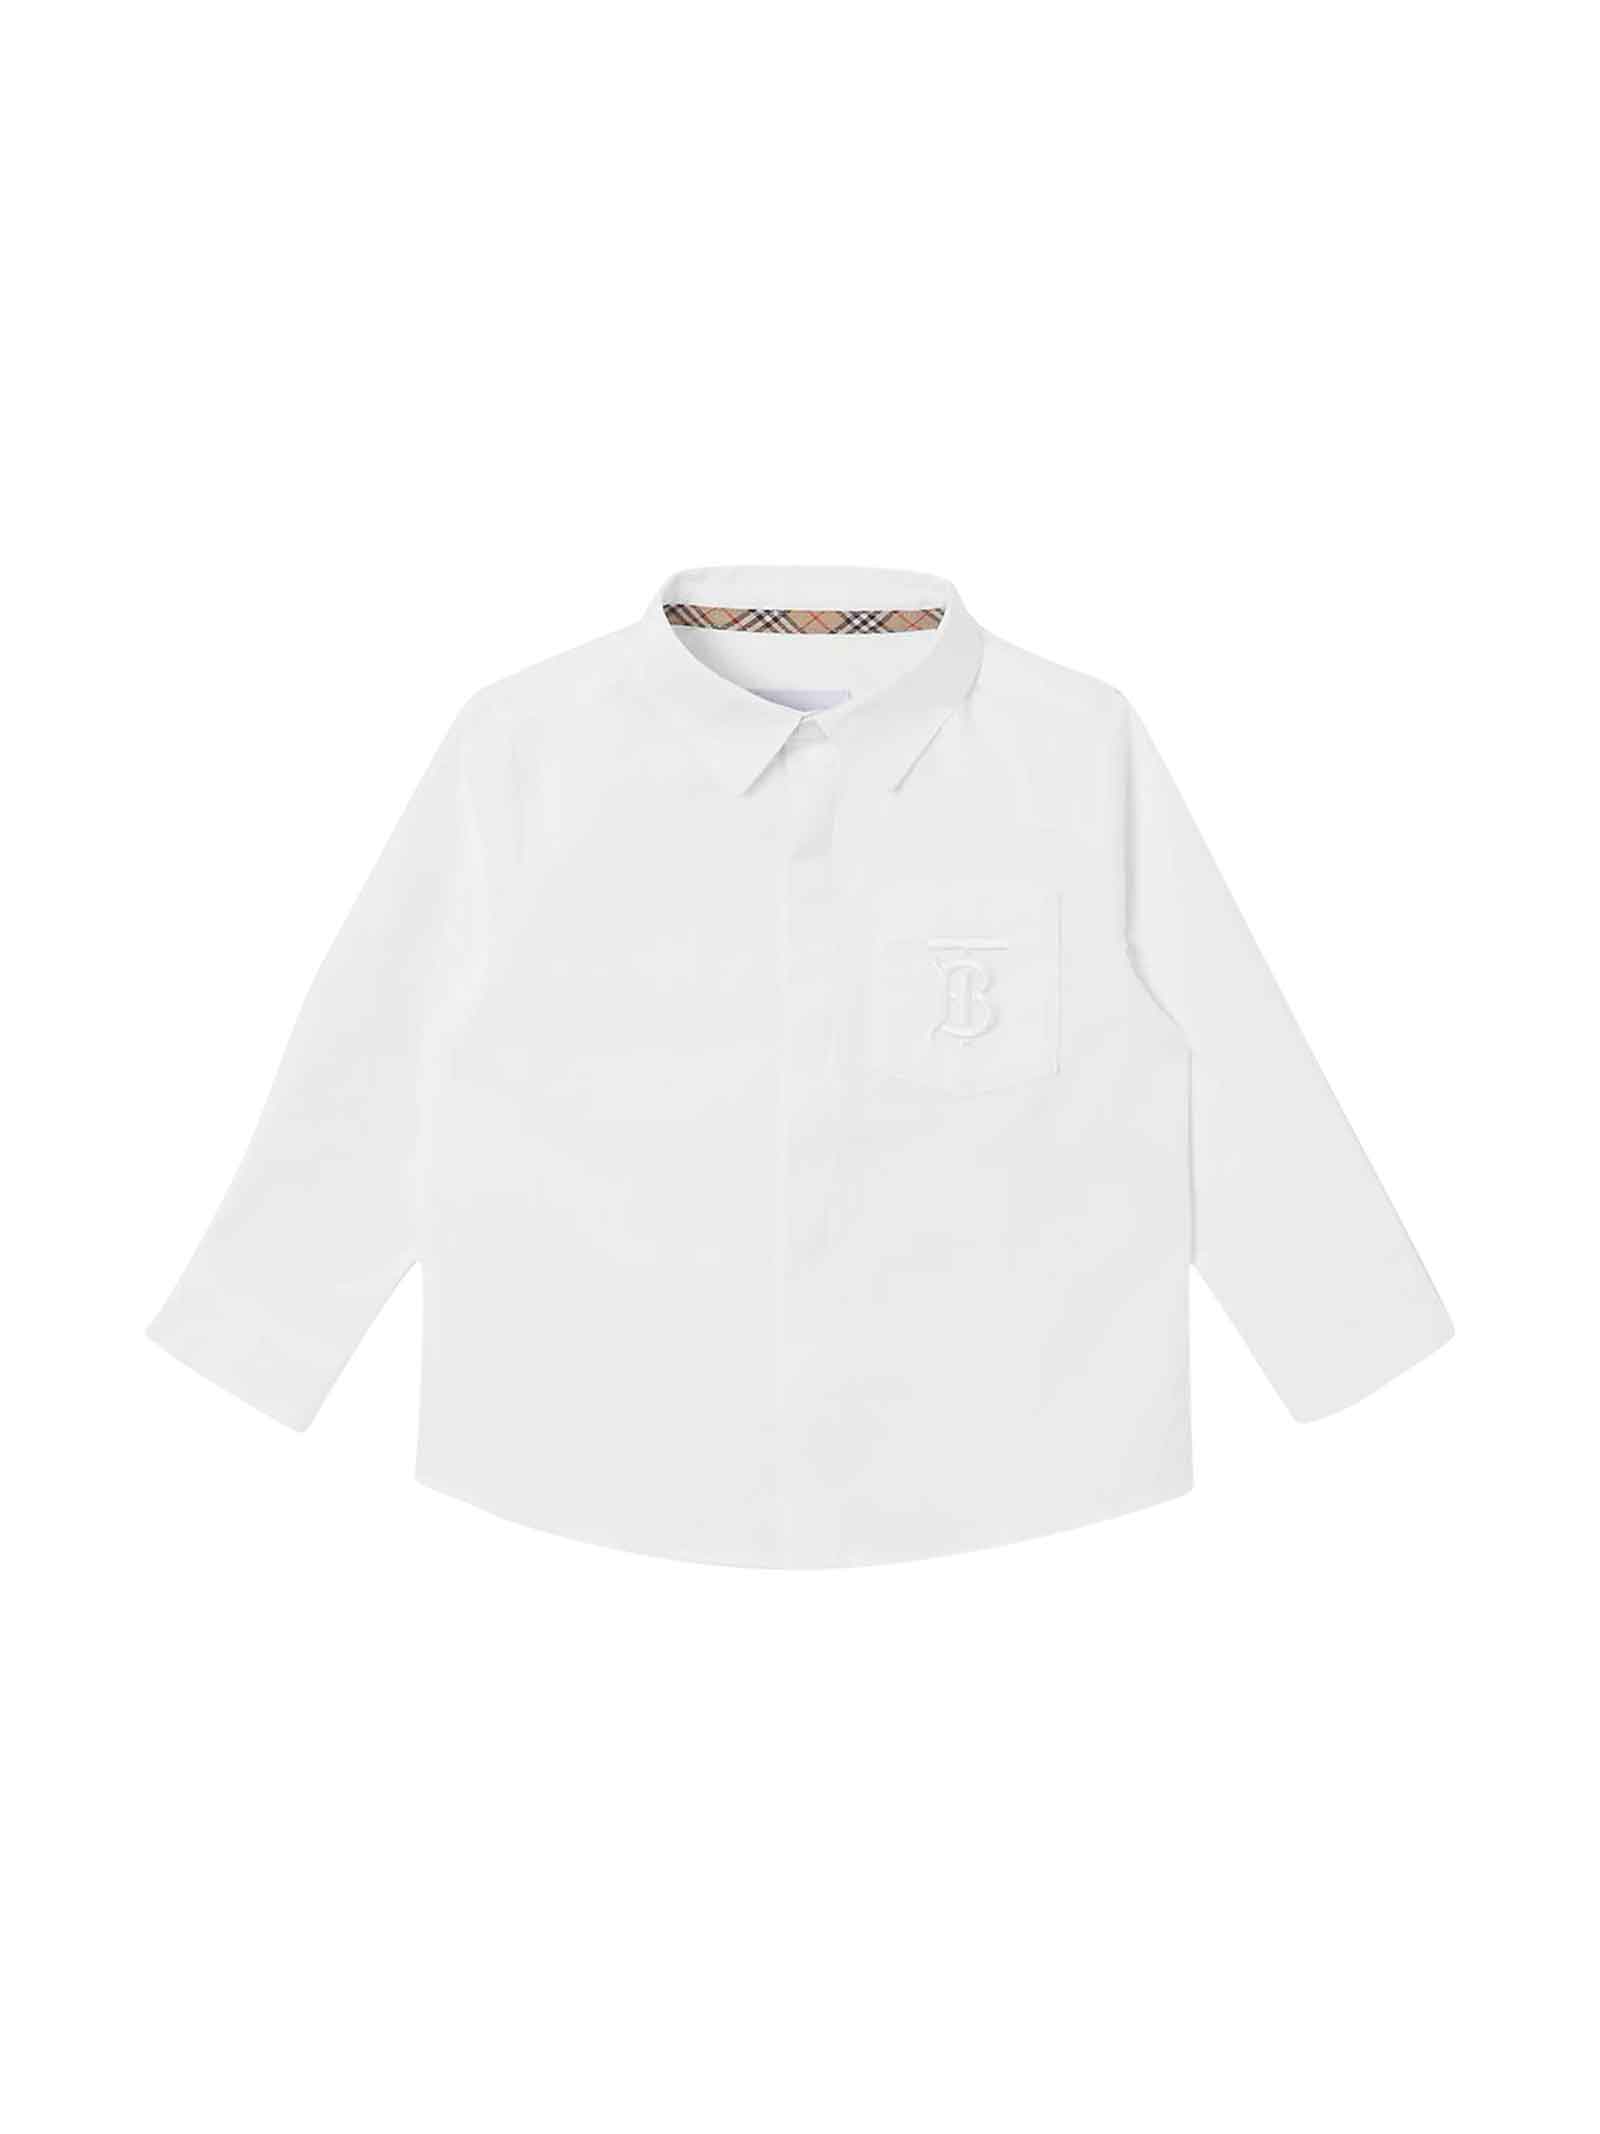 Burberry Newborn White Shirt